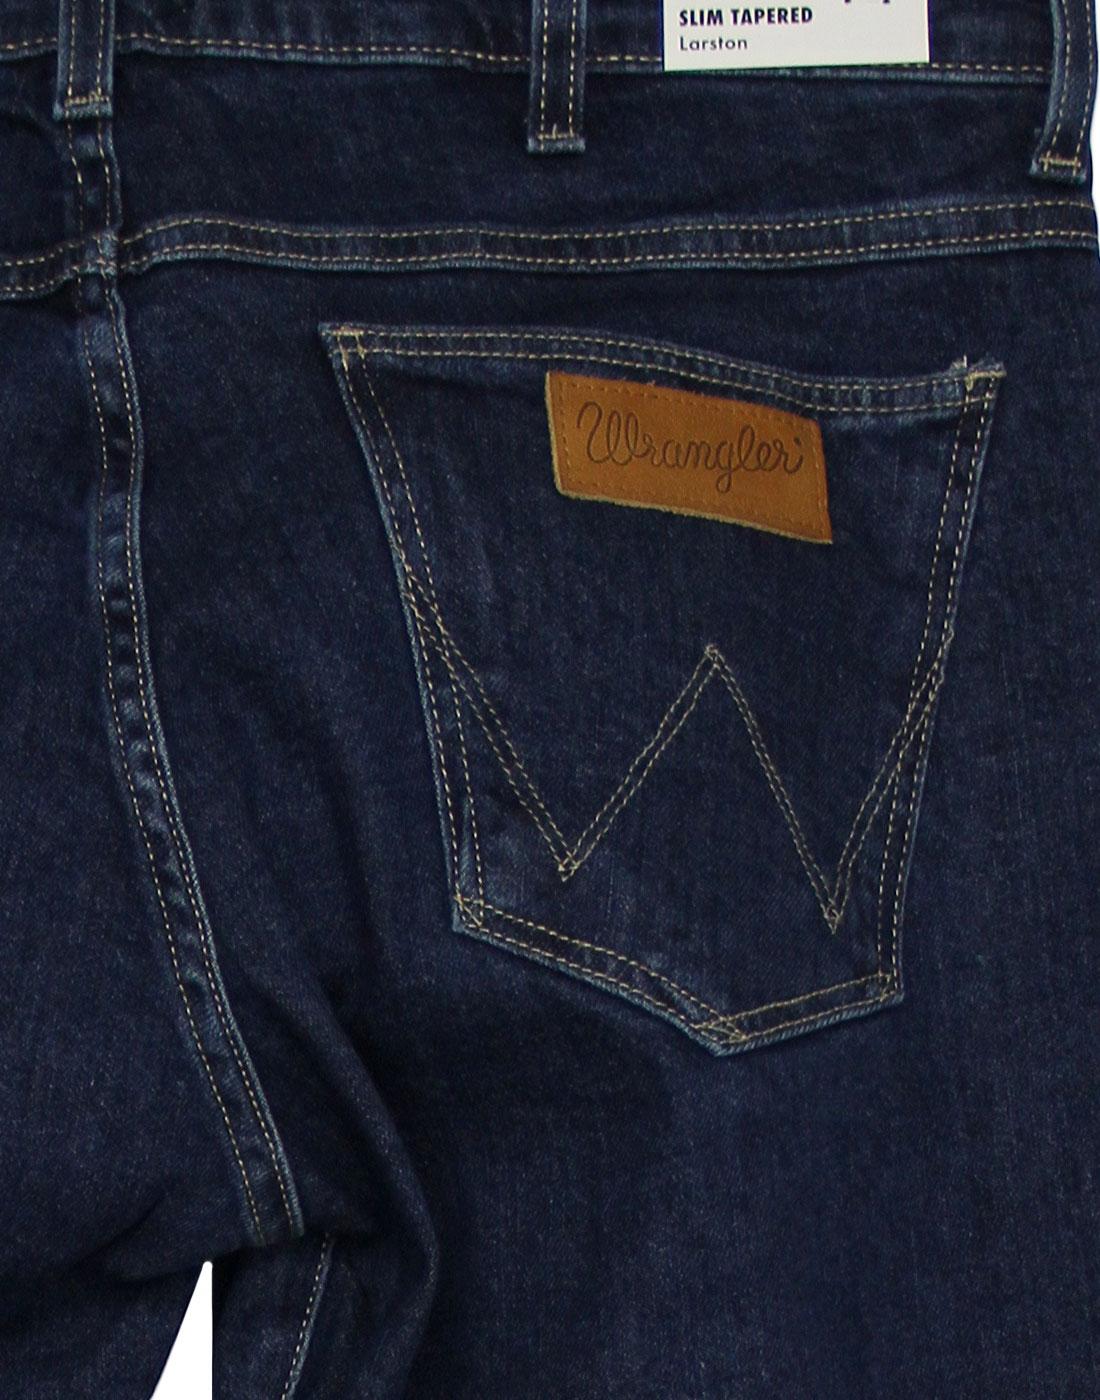 WRANGLER Larston Retro Mod Slim Tapered Darkstone Denim Jeans